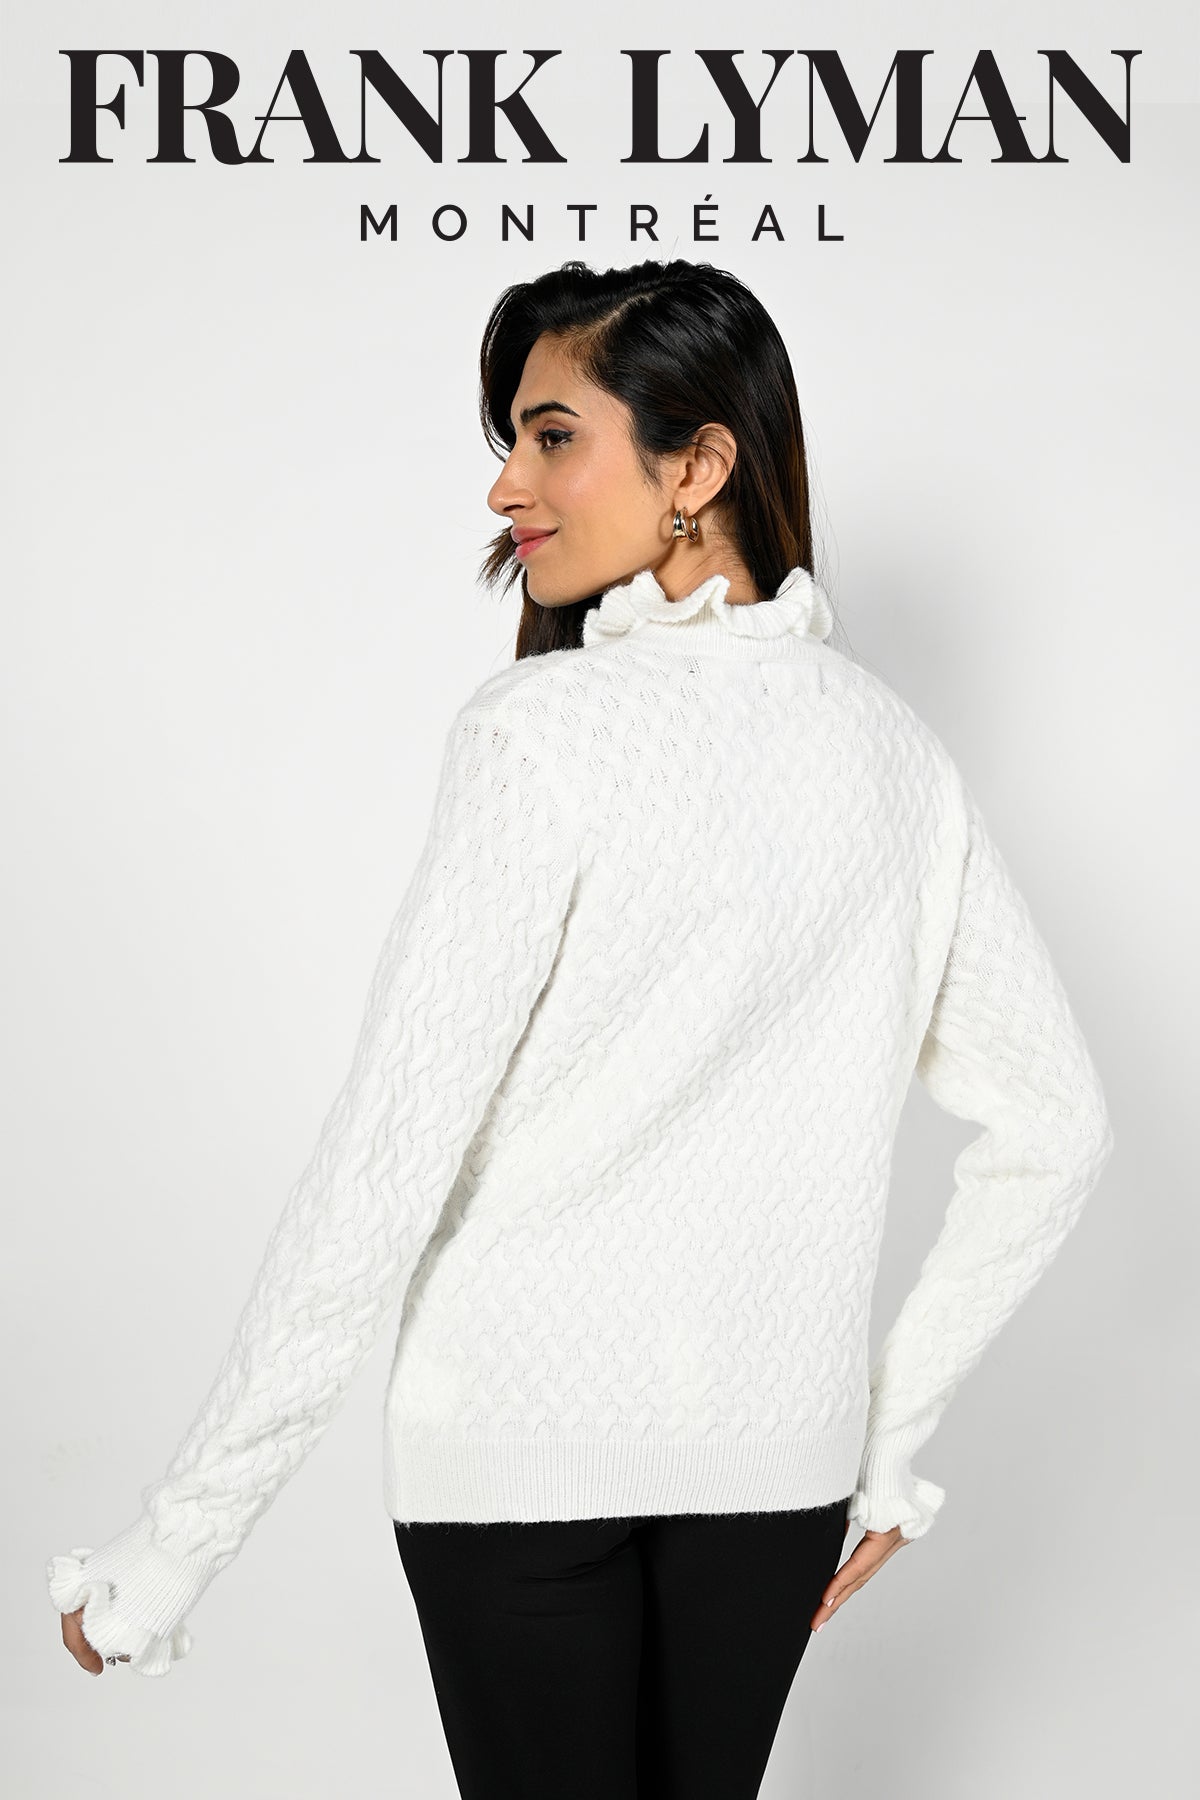 Frank Lyman Montreal Beige Sweater-Buy Frank Lyman Montreal Sweaters Online-Frank Lyman Montreal Online Sweater Shop